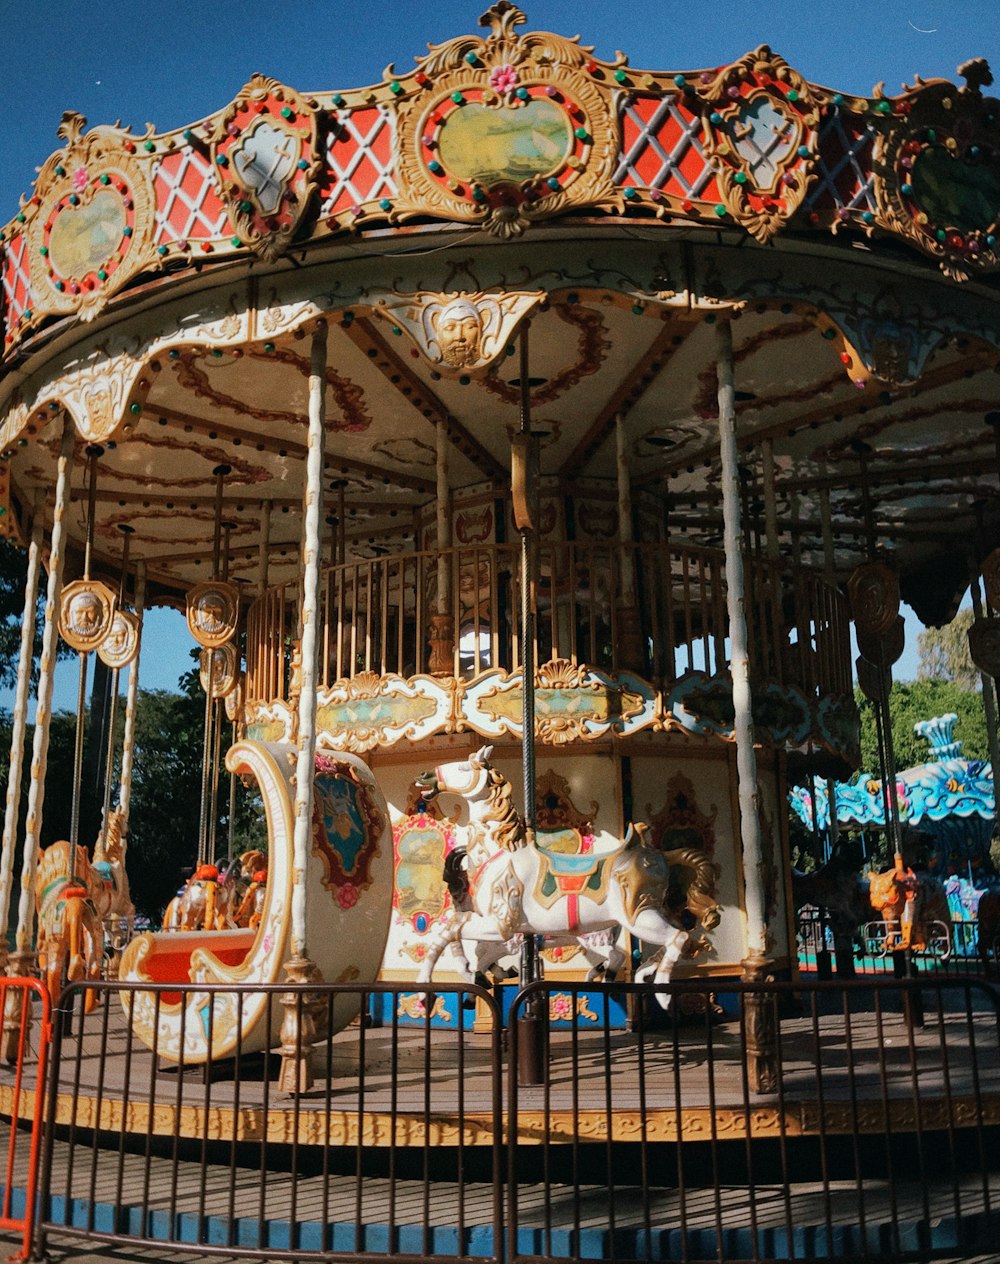 Ein Karussell in einem Karnevalspark